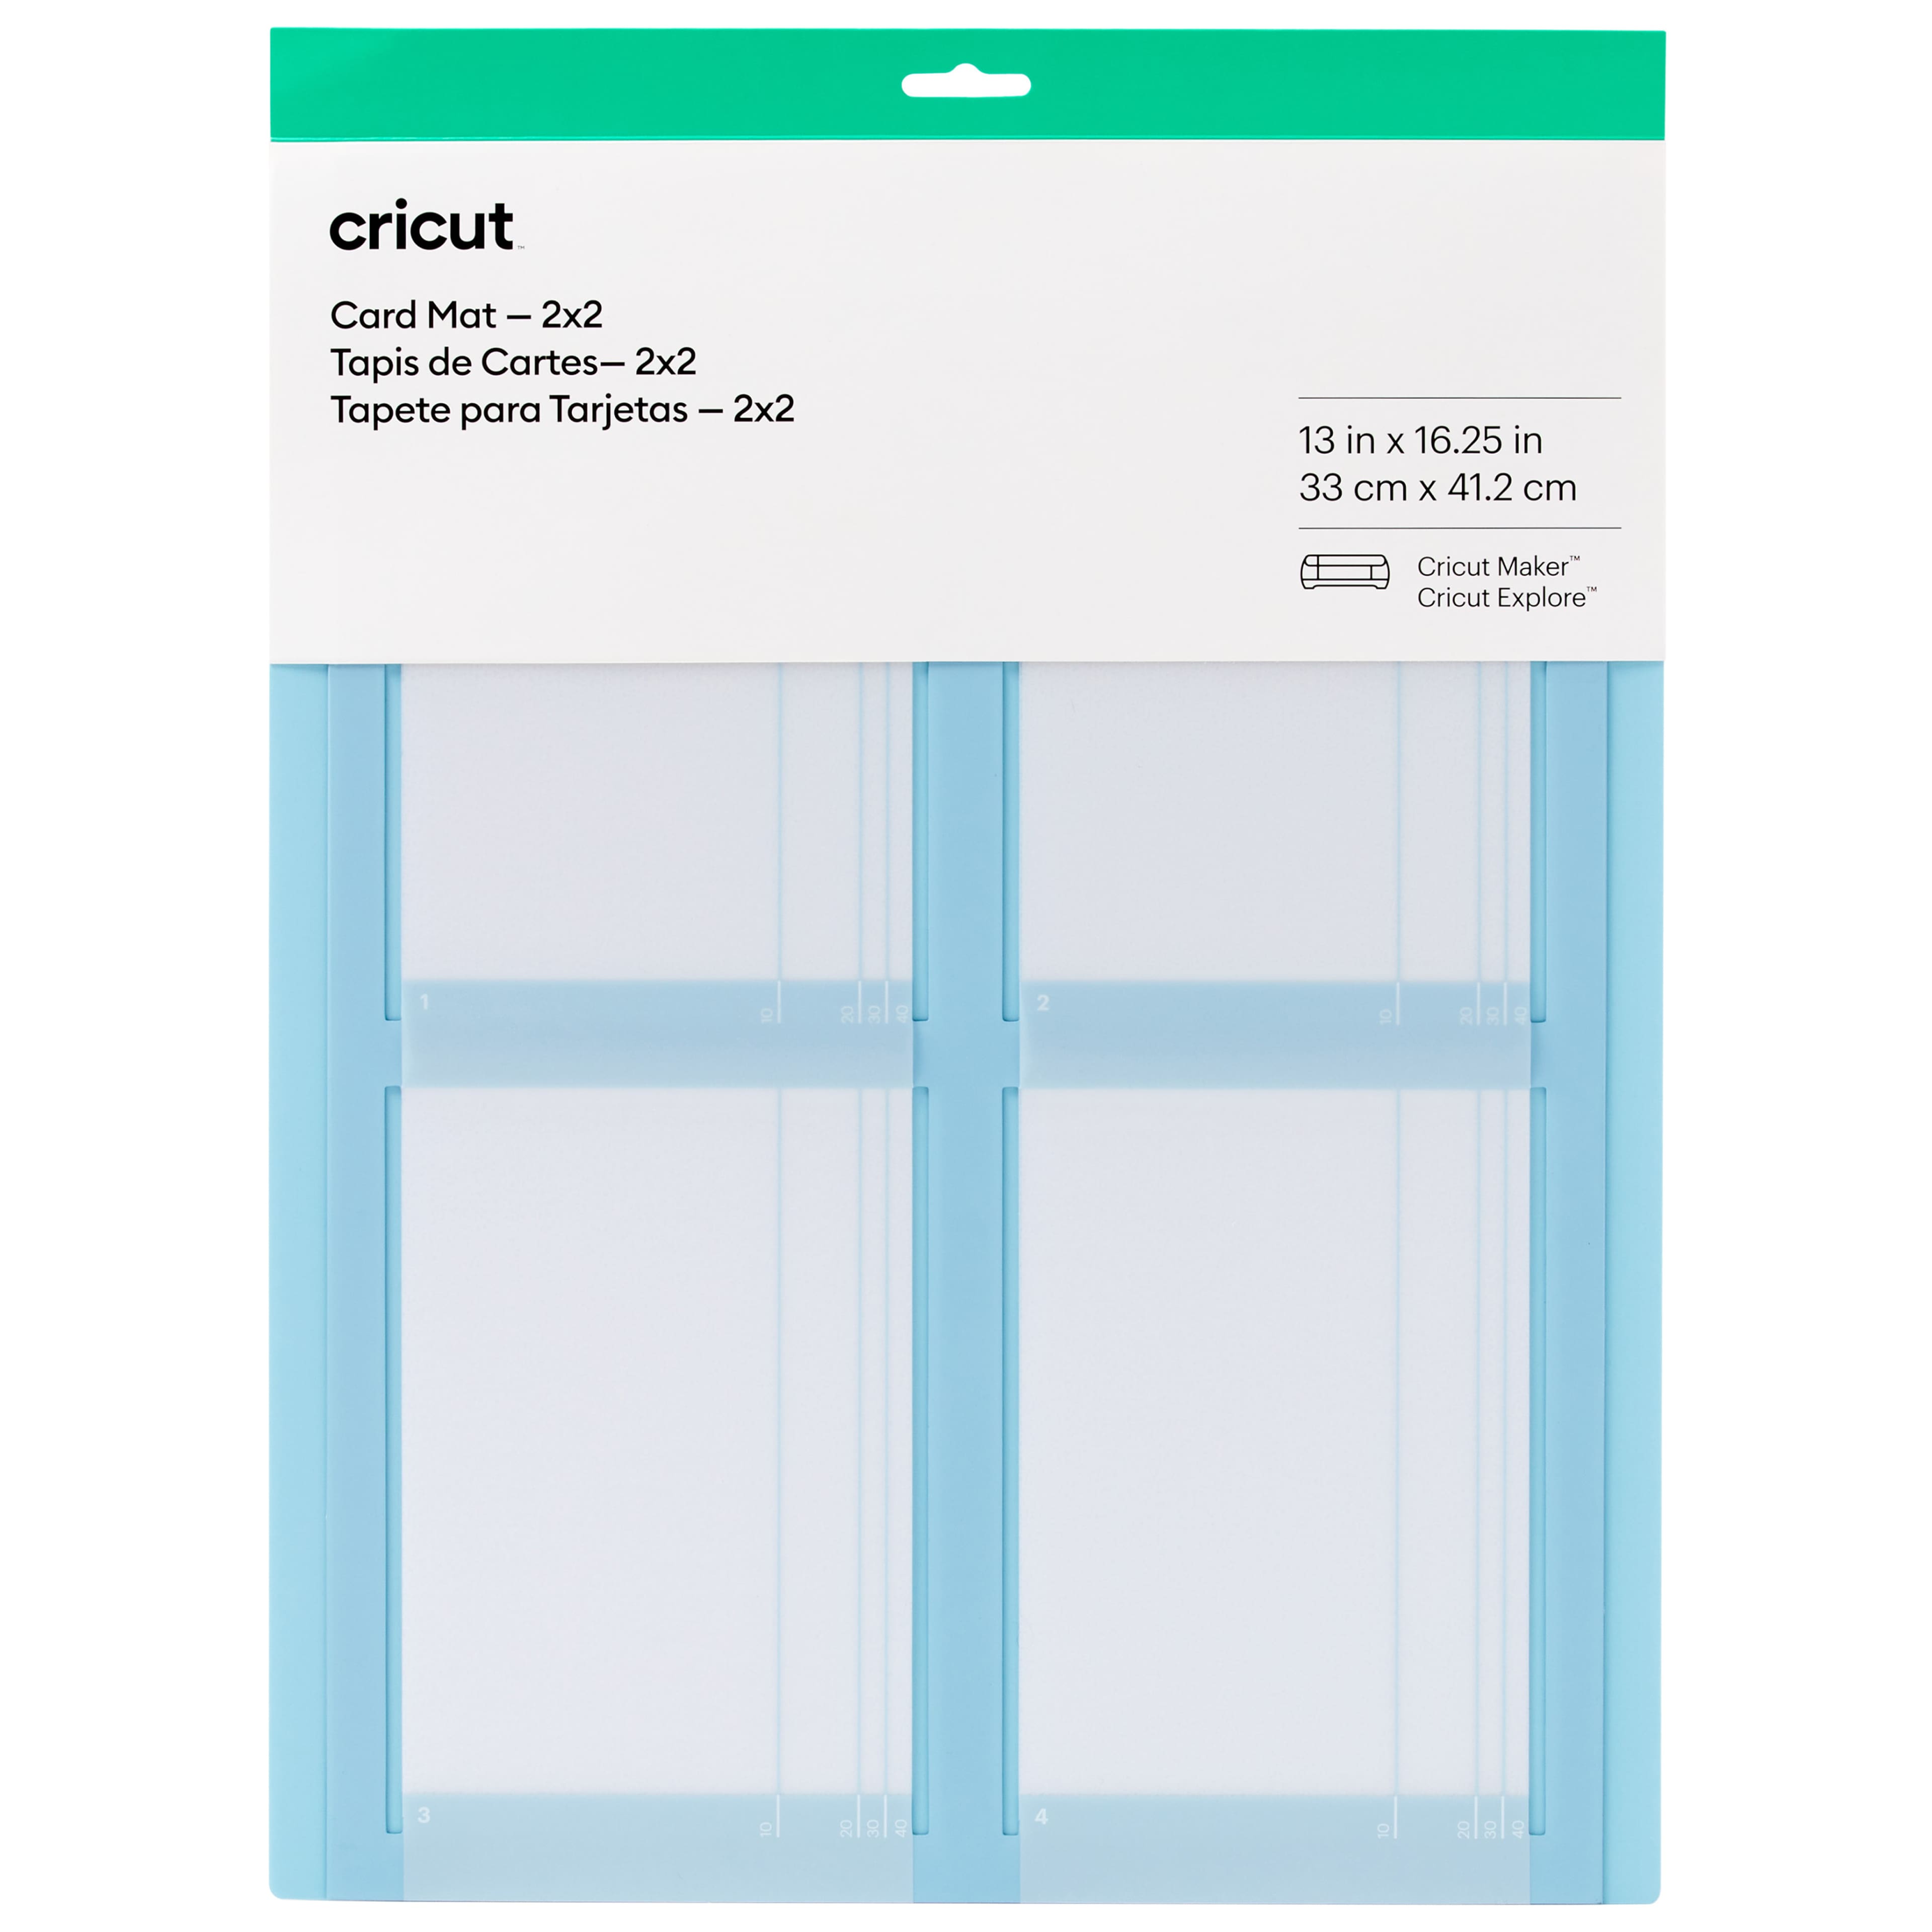 Cricut&#xAE; Card Mat 2x2